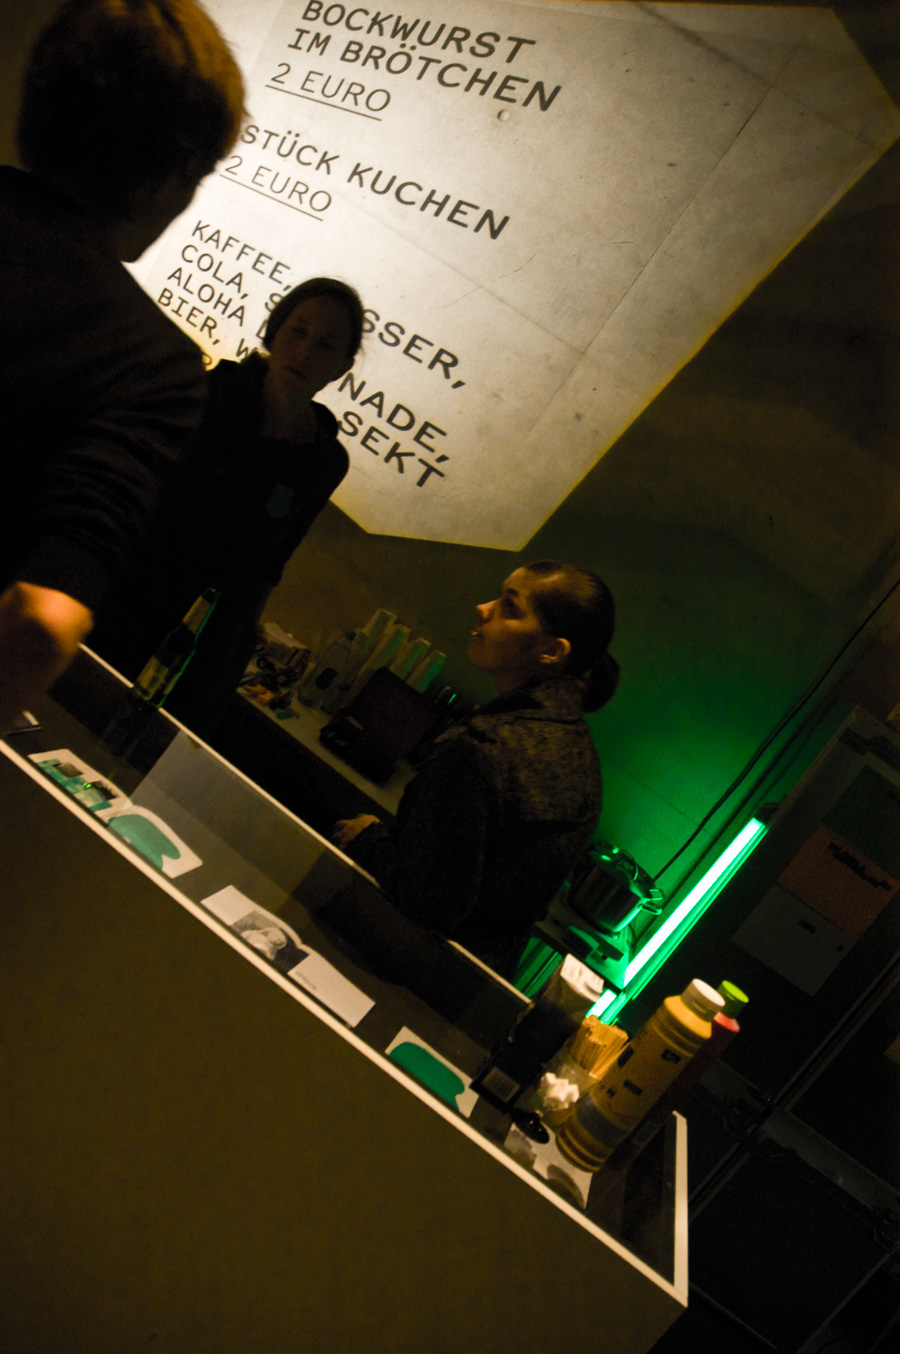 5 Jahre labor visuell henning humml green symposium fh düsseldorf Düsseldorf laboratory Exhibition 